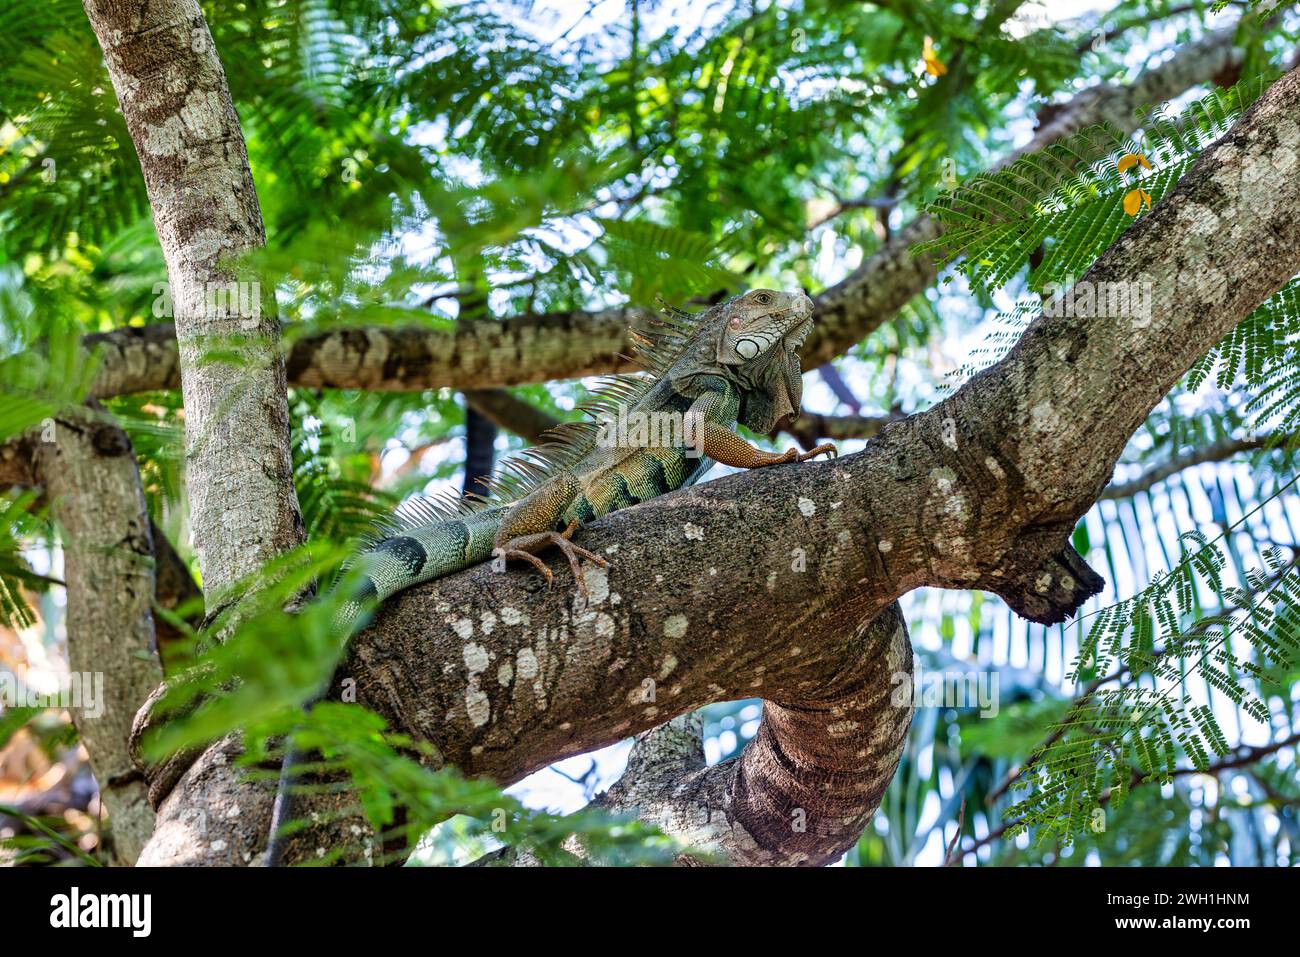 Grüner Leguan (Iguana Leguana) auf Baum im tropischen Regenwald. Centenario Park (Parque Centenario) Cartagena de Indias, Kolumbien Wildtier. Stockfoto